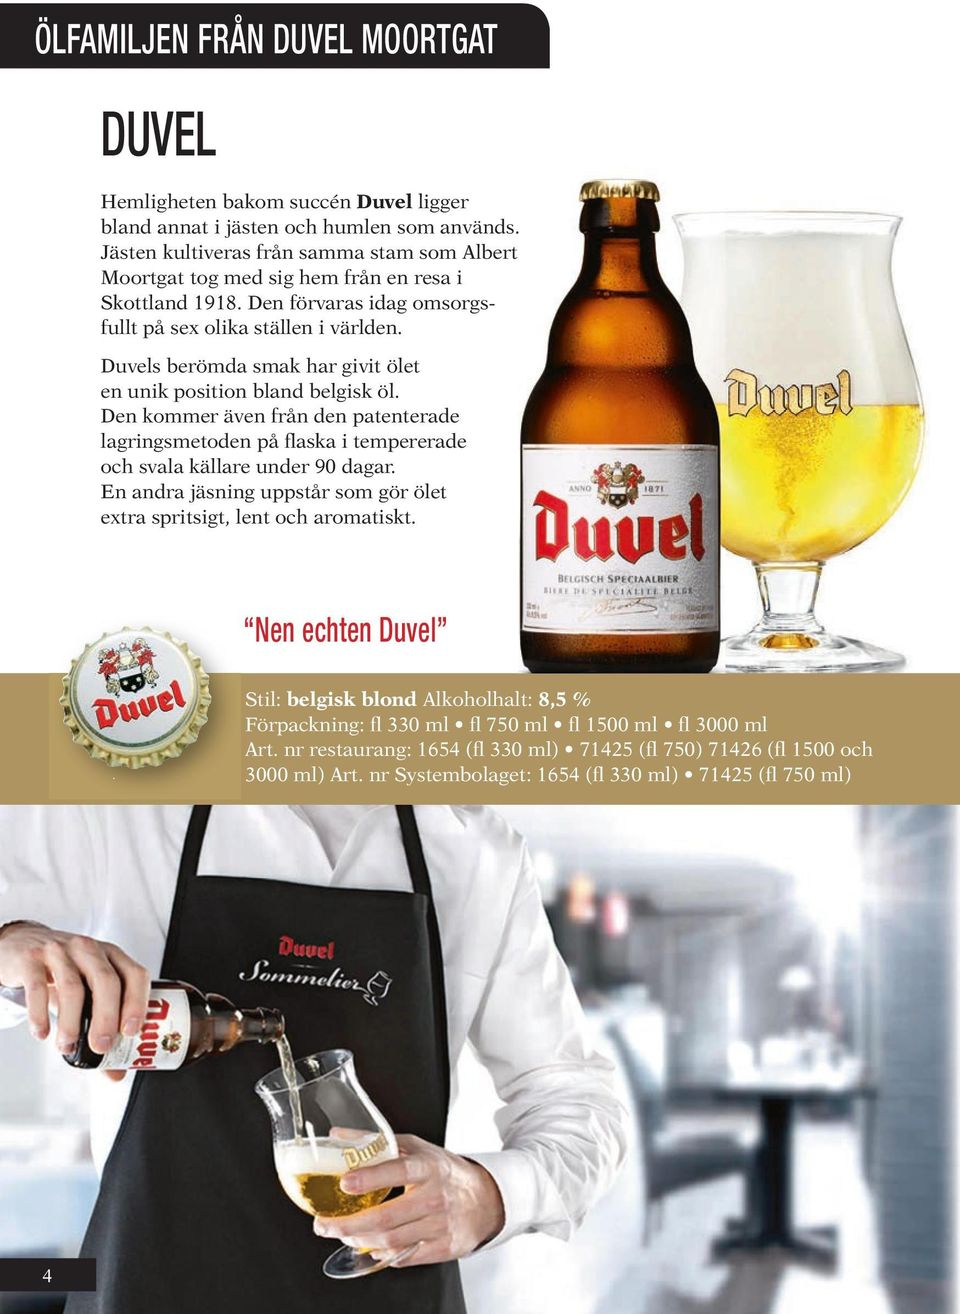 Duvels berömda smak har givit ölet en unik position bland belgisk öl. Den kommer även från den patenterade lagringsmetoden på flaska i tempererade och svala källare under 90 dagar.